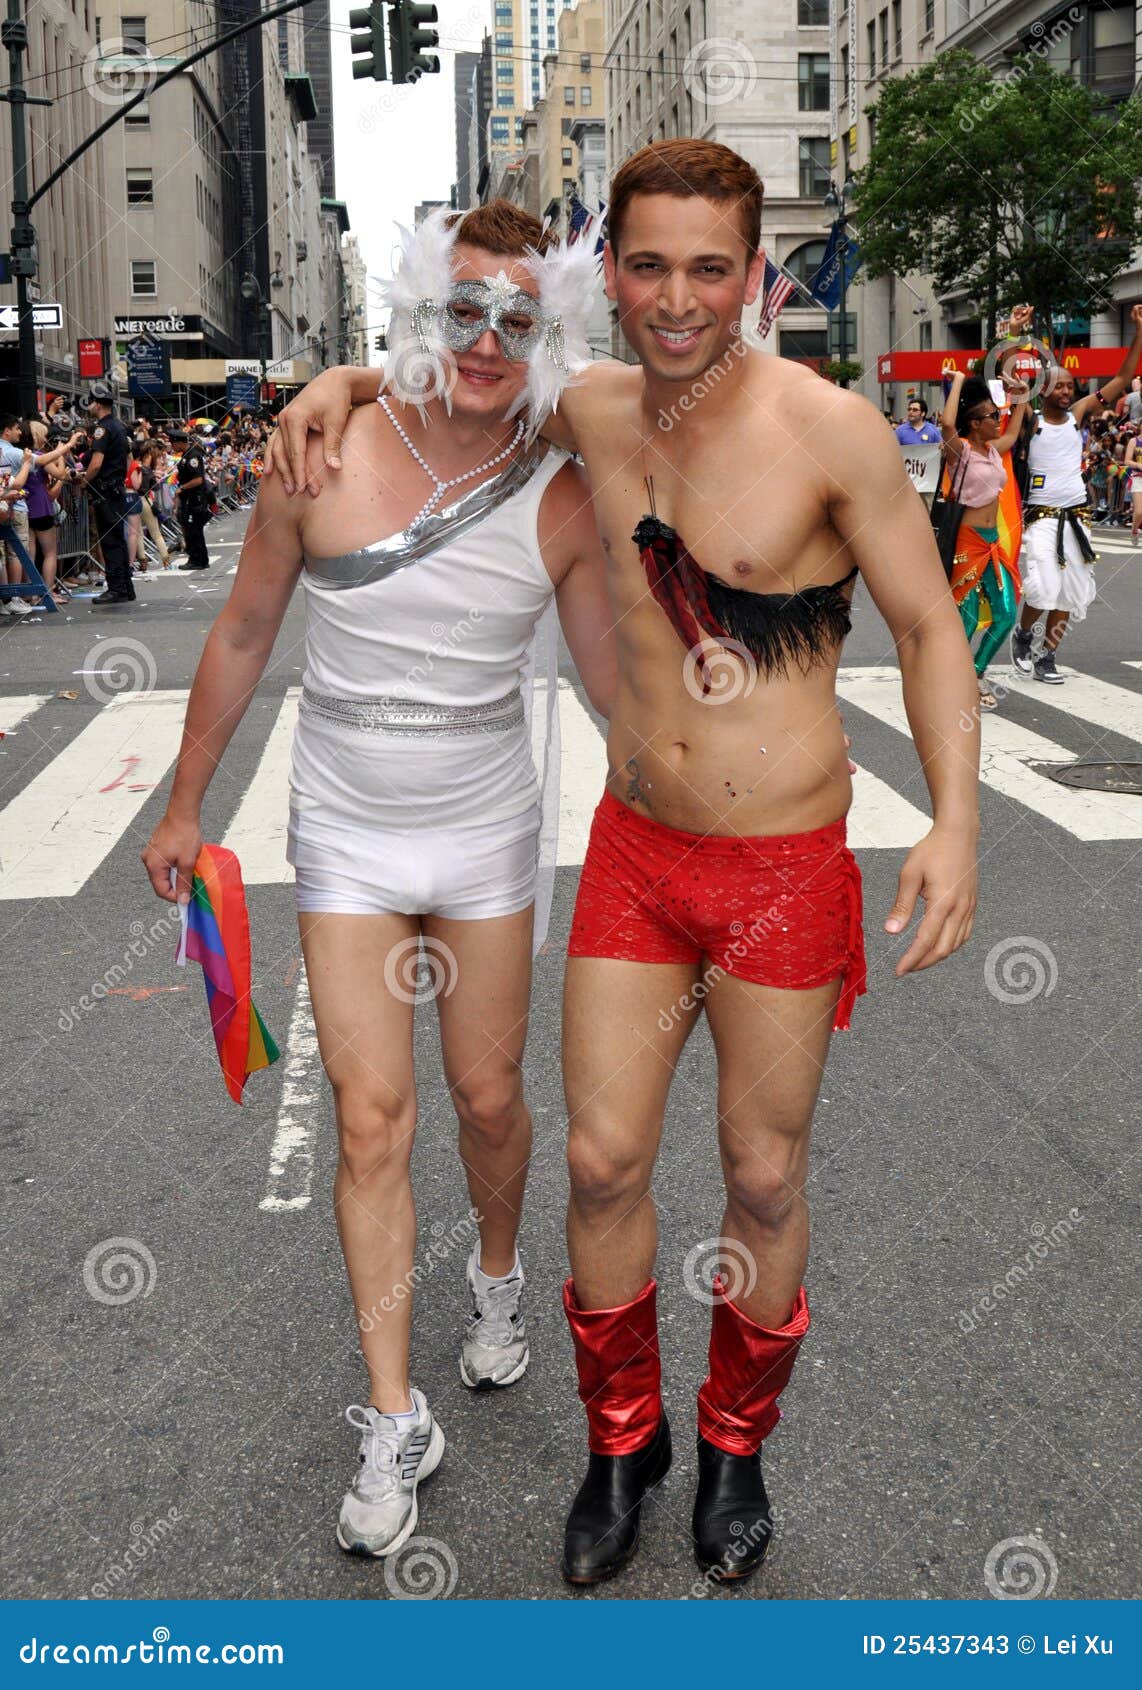 nyc-2012-gay-pride-parade-25437343.jpg